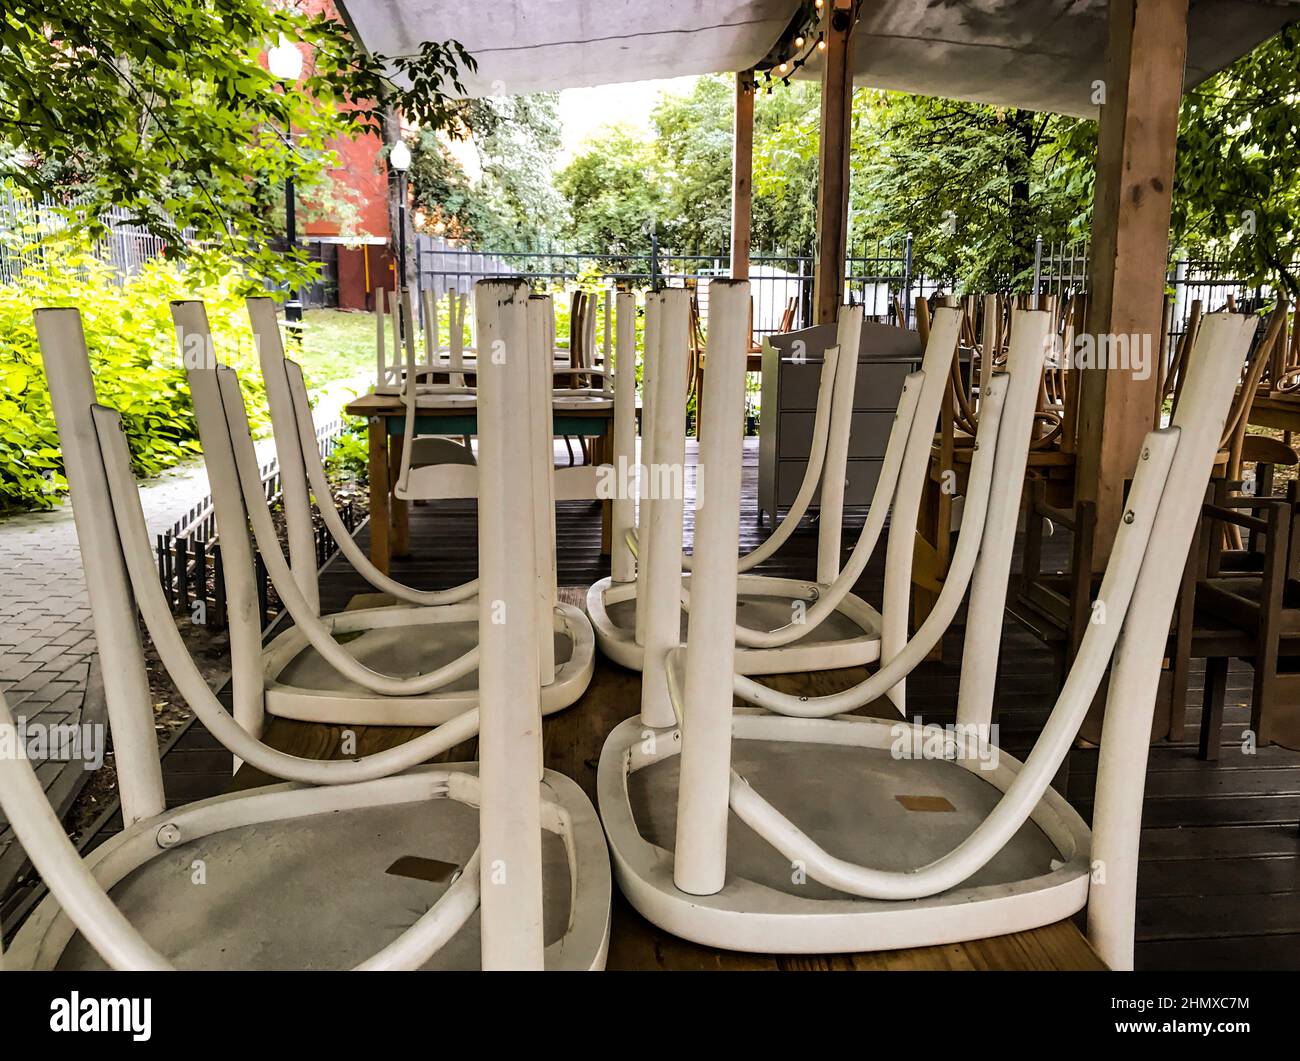 La terrazza estiva in legno del caffè è chiusa, non ci sono persone, le sedie sono ribaltate, alberi verdi sono tutto intorno. Foto Stock